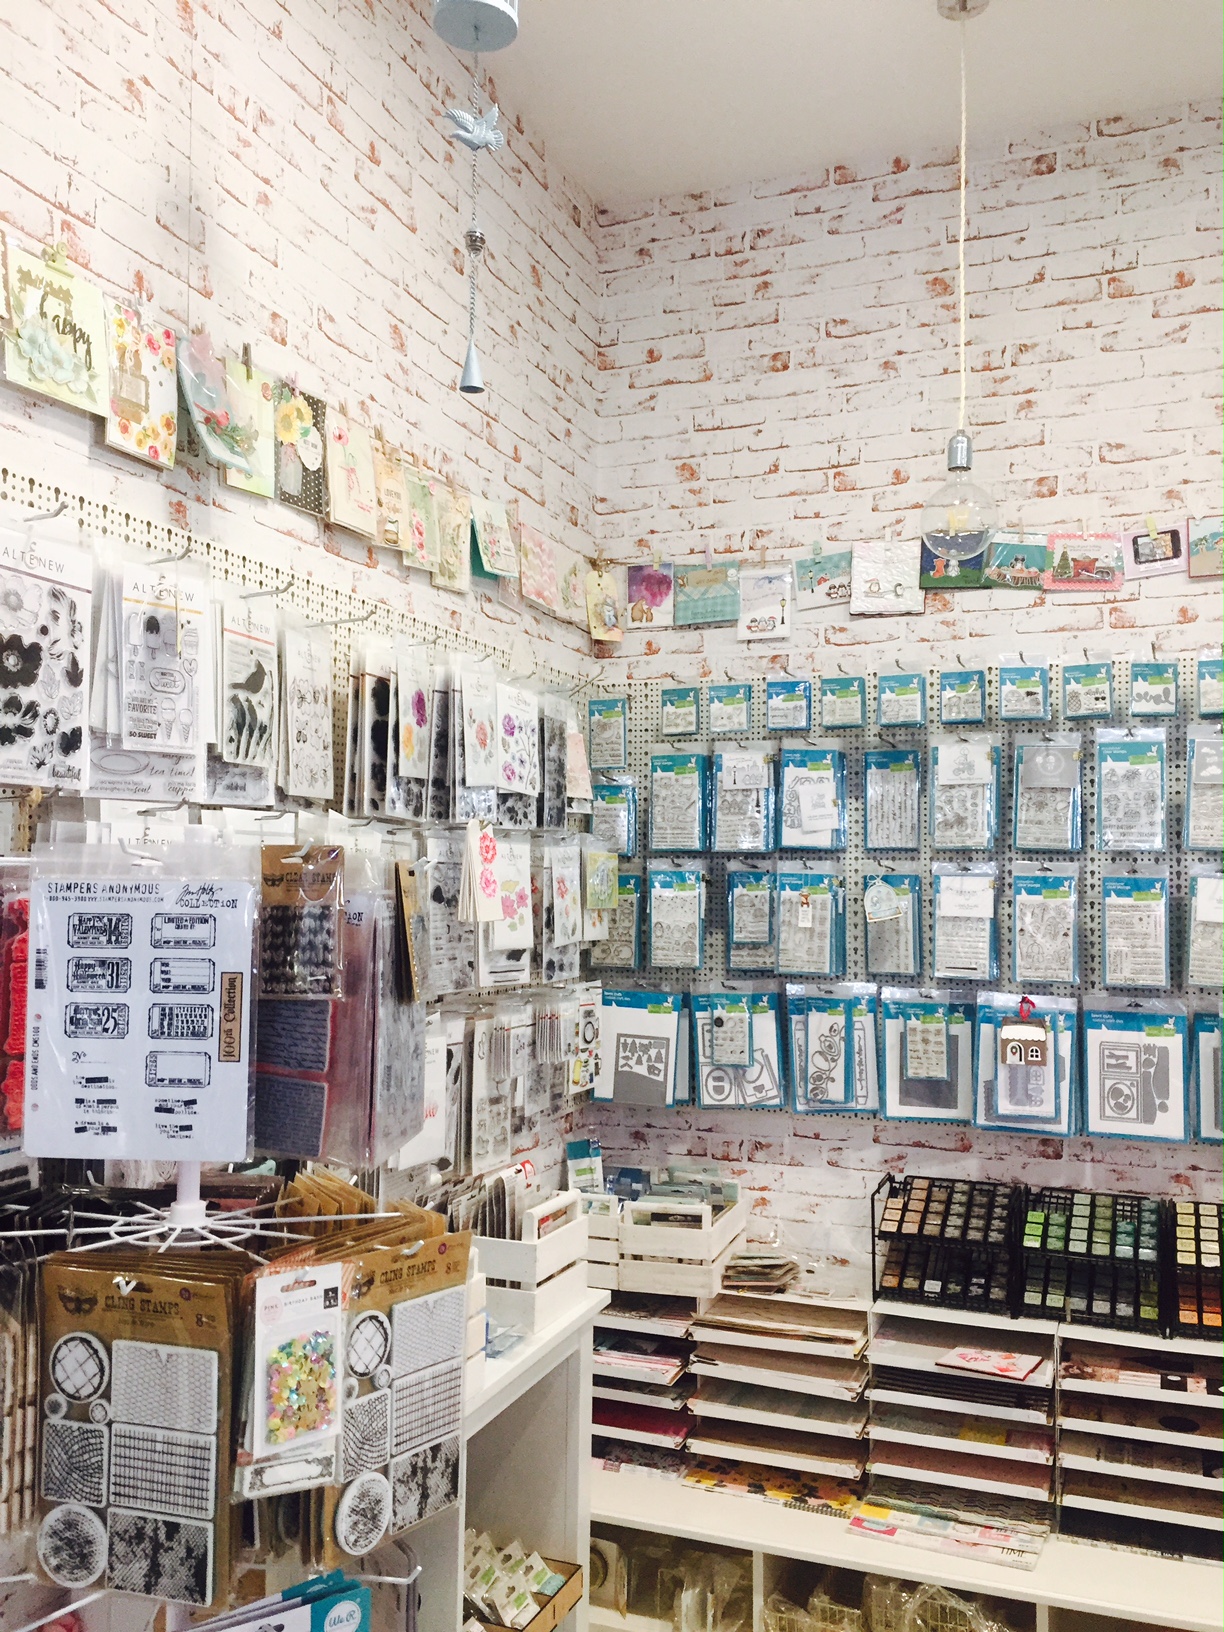 VILLAGGIO DEL SOGNO – Scrapbooking e creatività! Nel cuore di Legnano un negozio per sognare, creare e conservare i nostri ricordi…